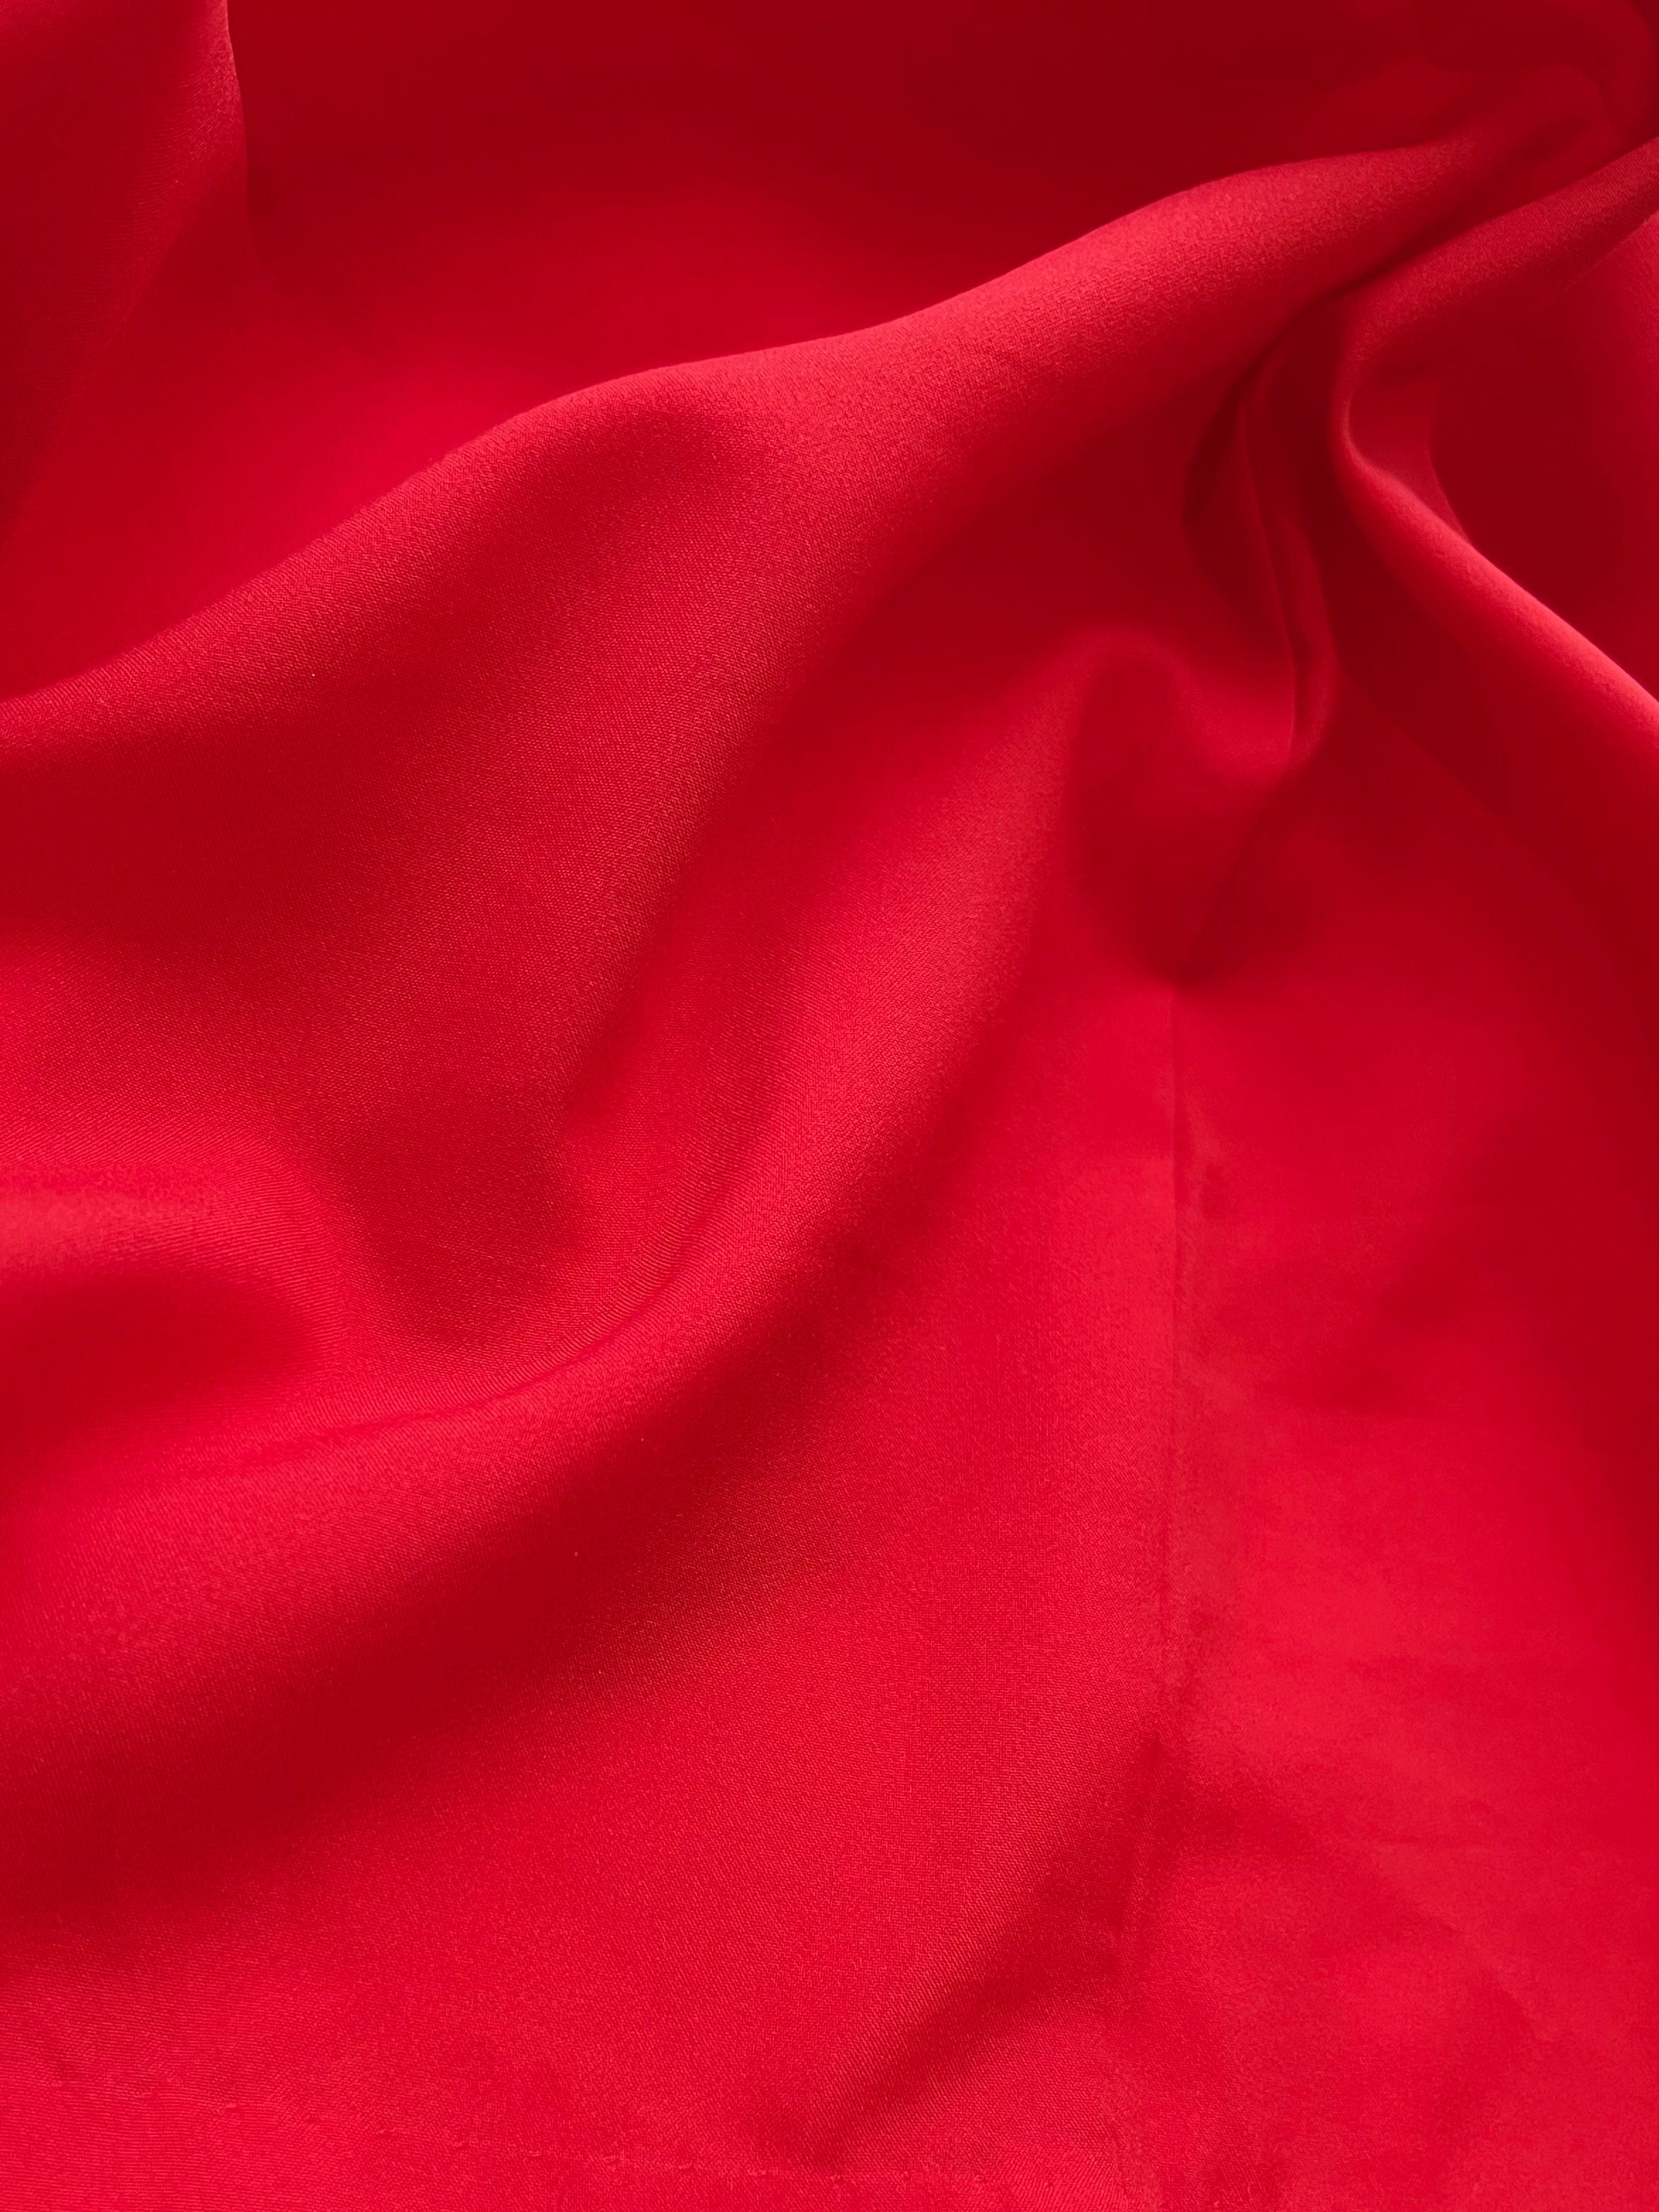 Nagusa undergarment red for denim long-sleeved kimono